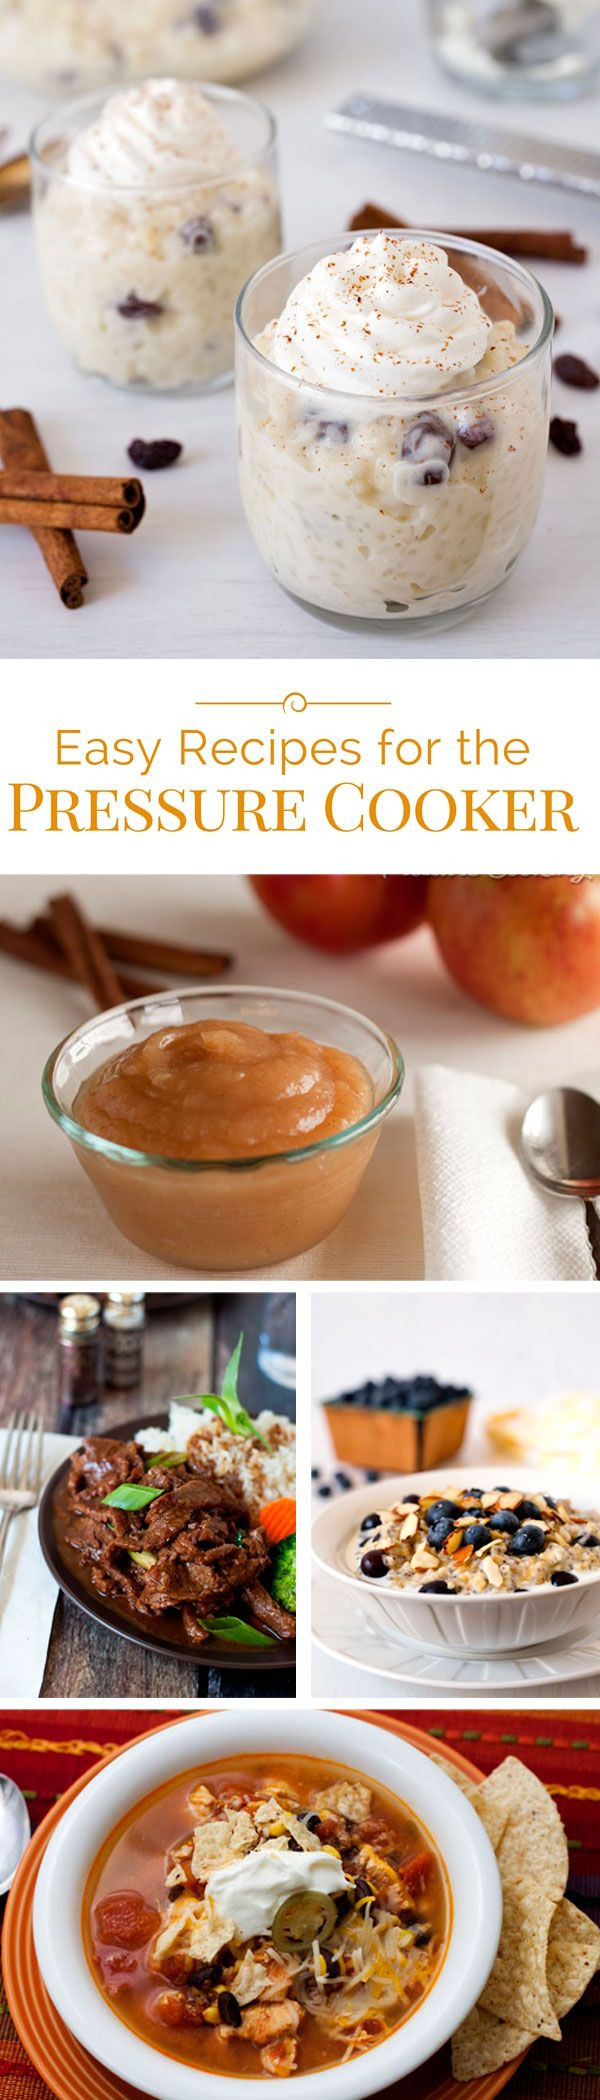 Pressure Cooker Desserts Recipes
 153 best Pressure Cooker Desserts images on Pinterest